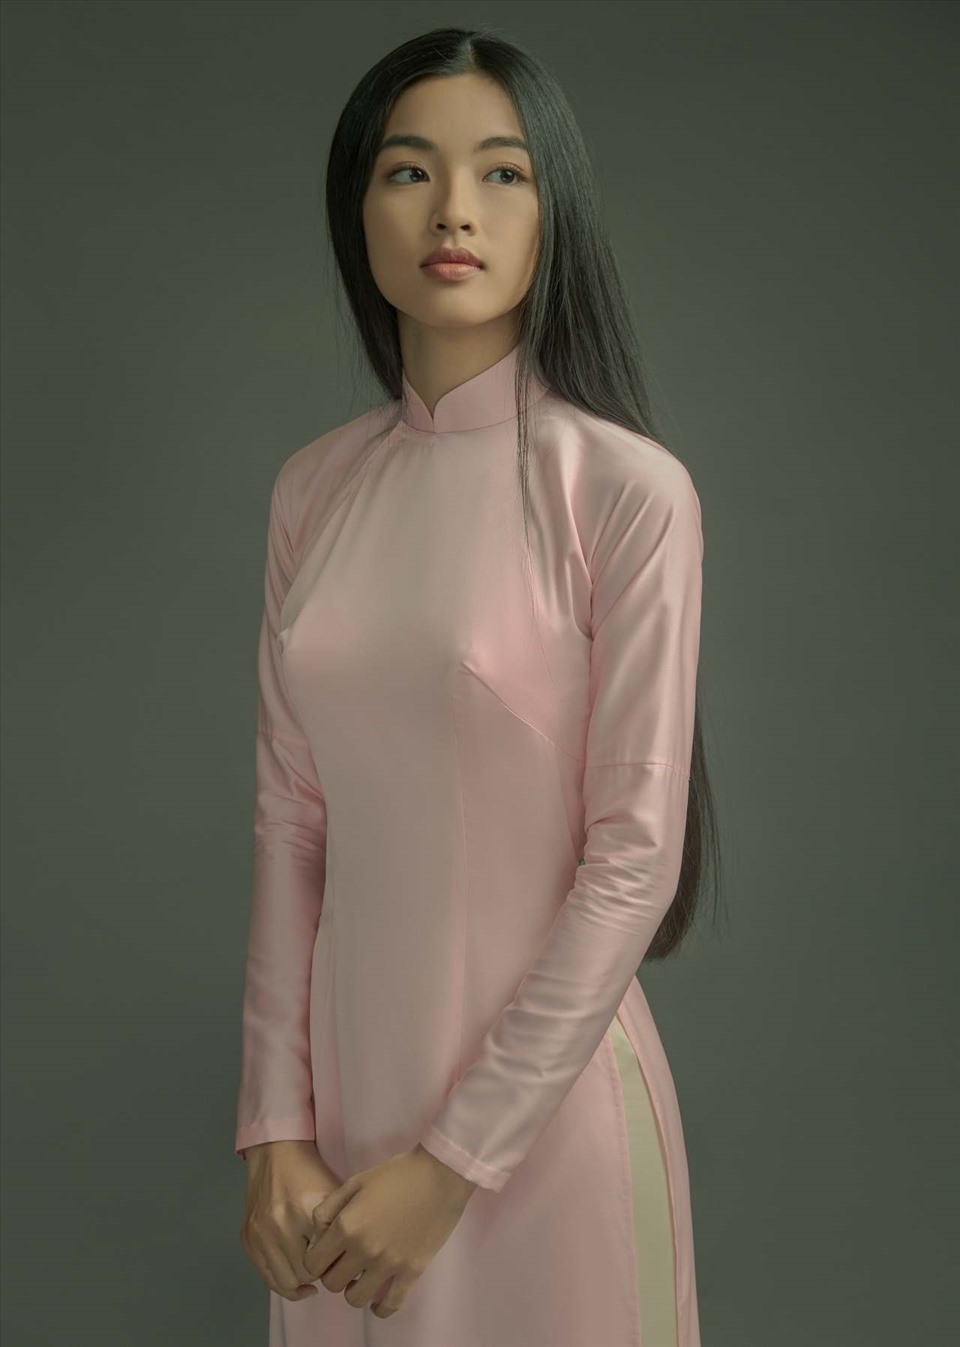 Là gương mặt mới toanh trong làng giải trí, Phạm Nguyễn Lan Thy (sinh năm 1998) hiện đang làm người mẫu ảnh và tham gia đóng quảng cáo cho một vài nhãn hàng nổi tiếng.